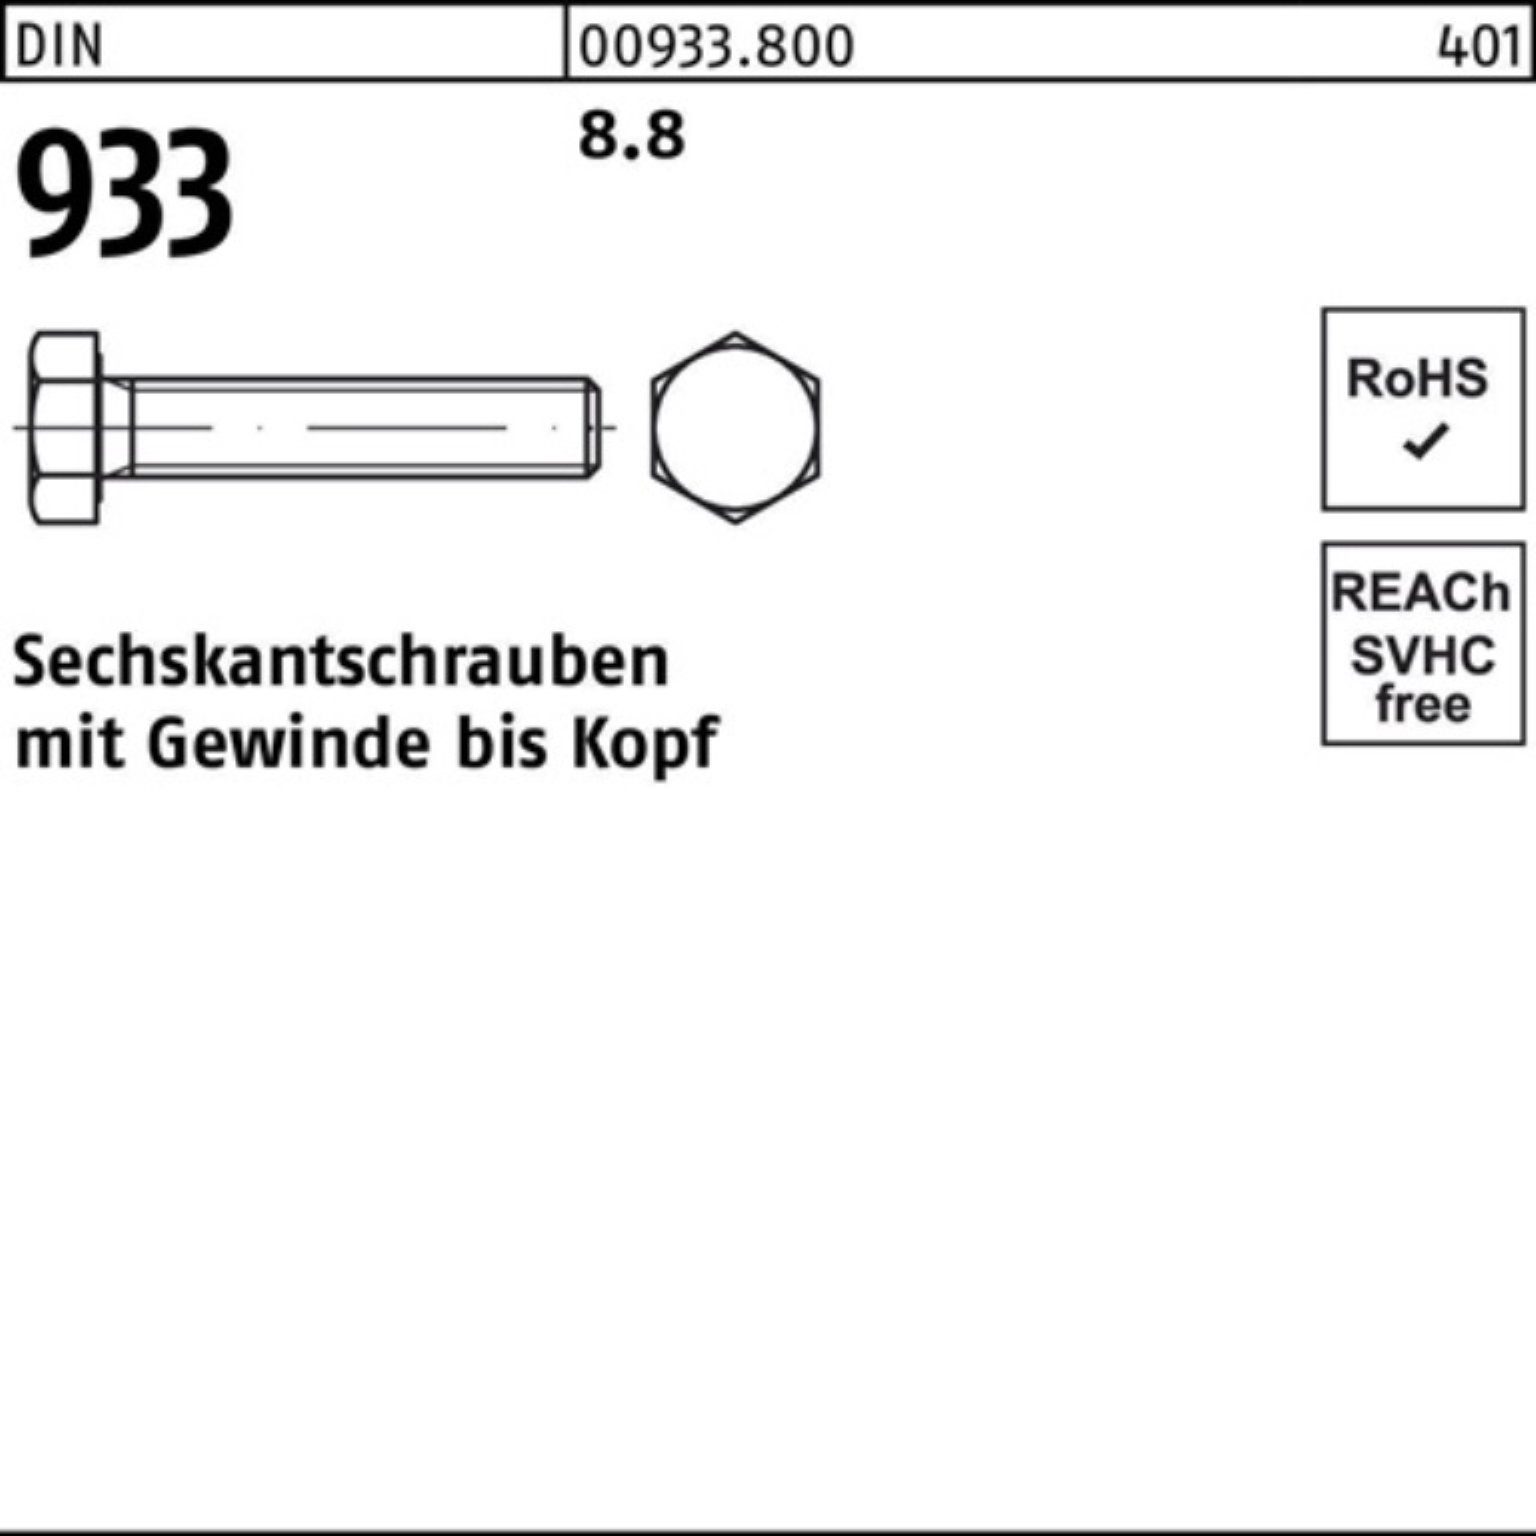 DIN M42x 933 Sechskantschraube 130 Pack 1 933 100er Reyher Sechskantschraube Stück DIN 8.8 VG